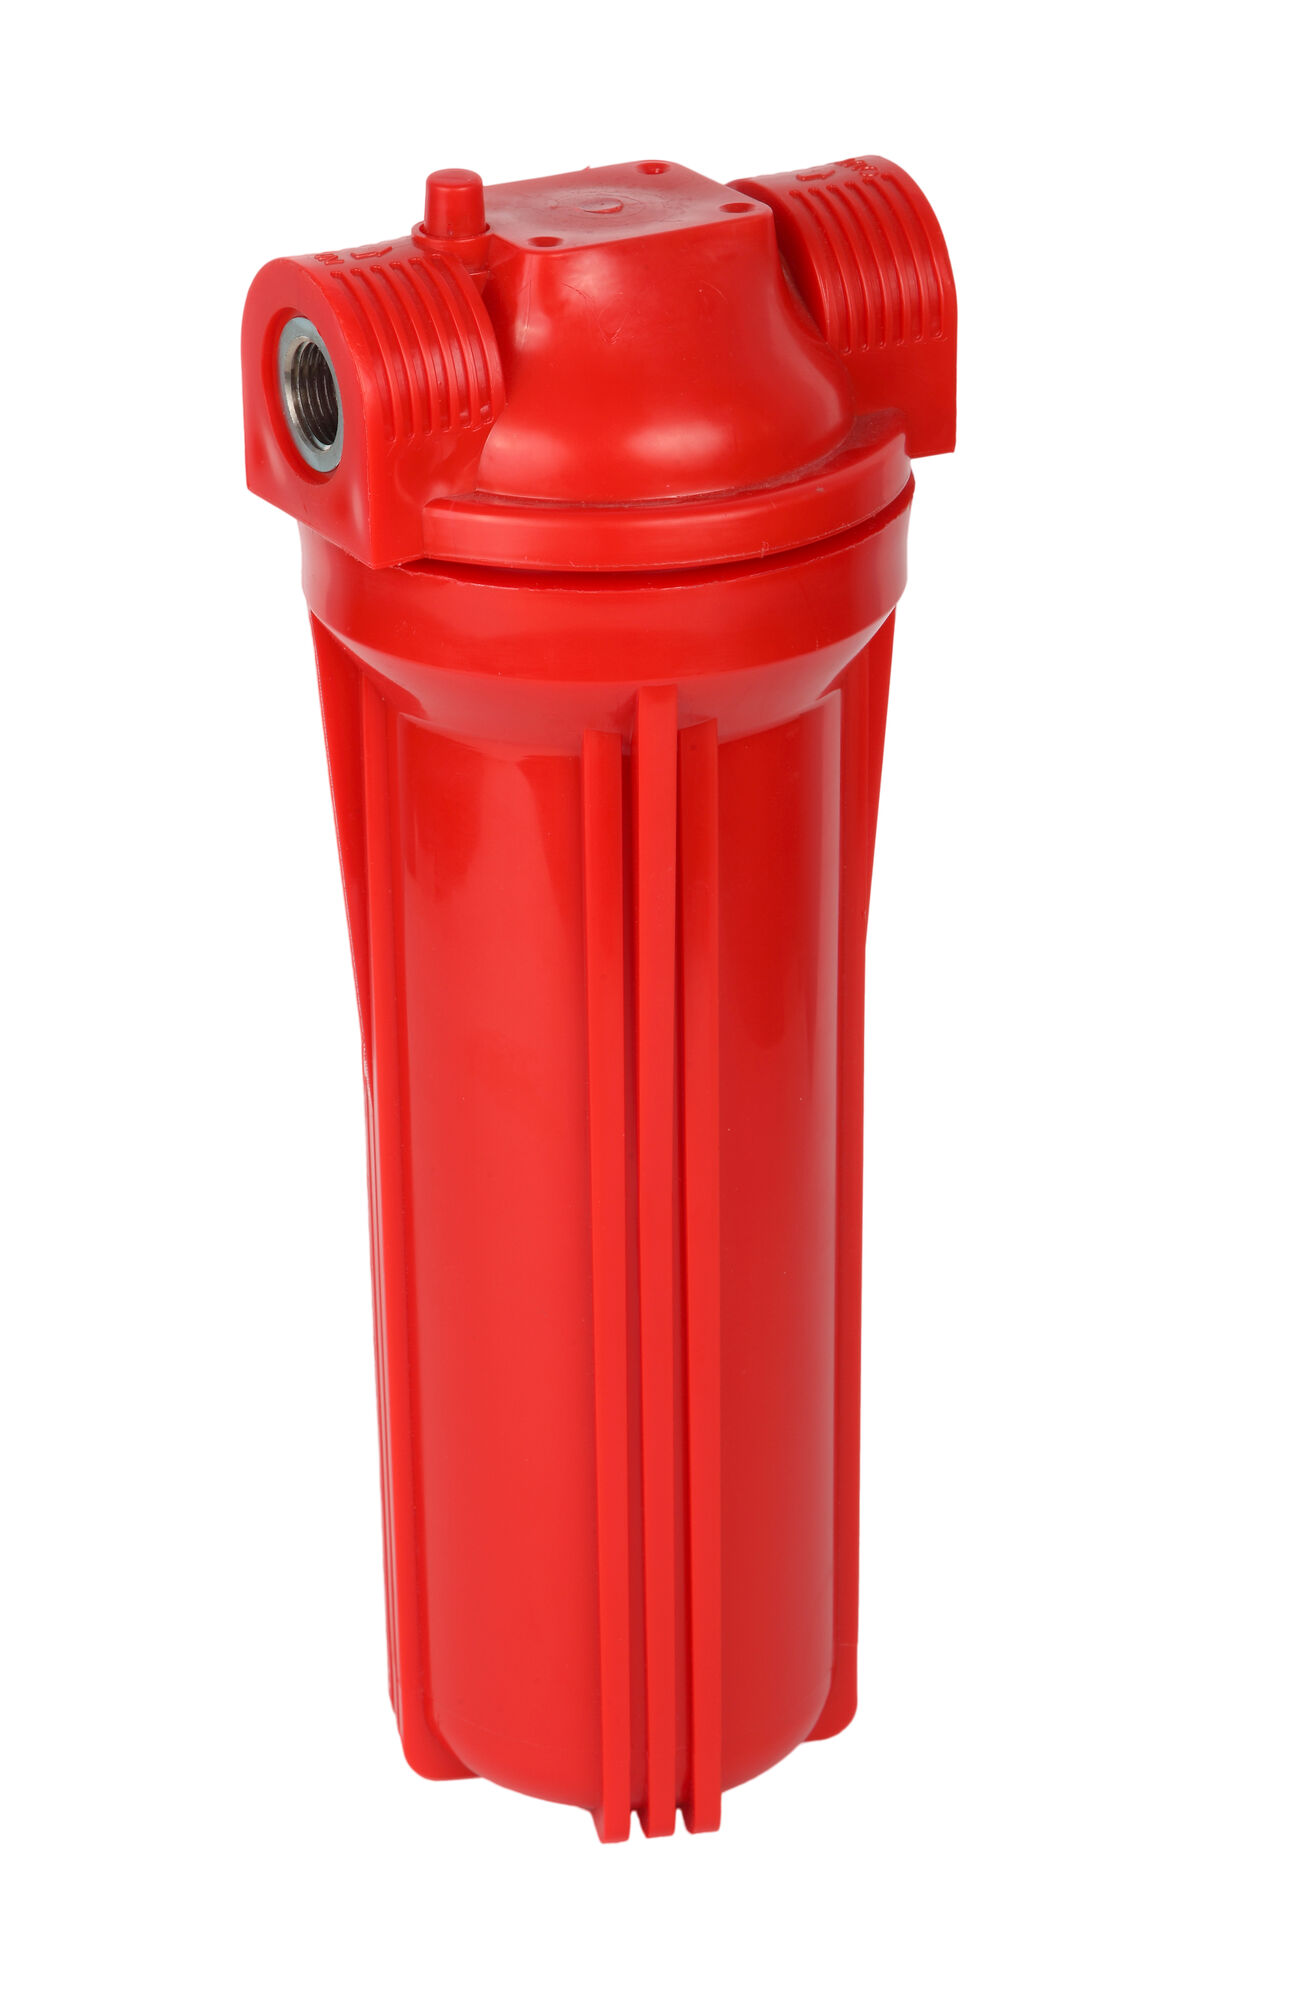 Фильтр для горячей воды Акватек Slim line FMR12 (красный корпус 10", 1/2)